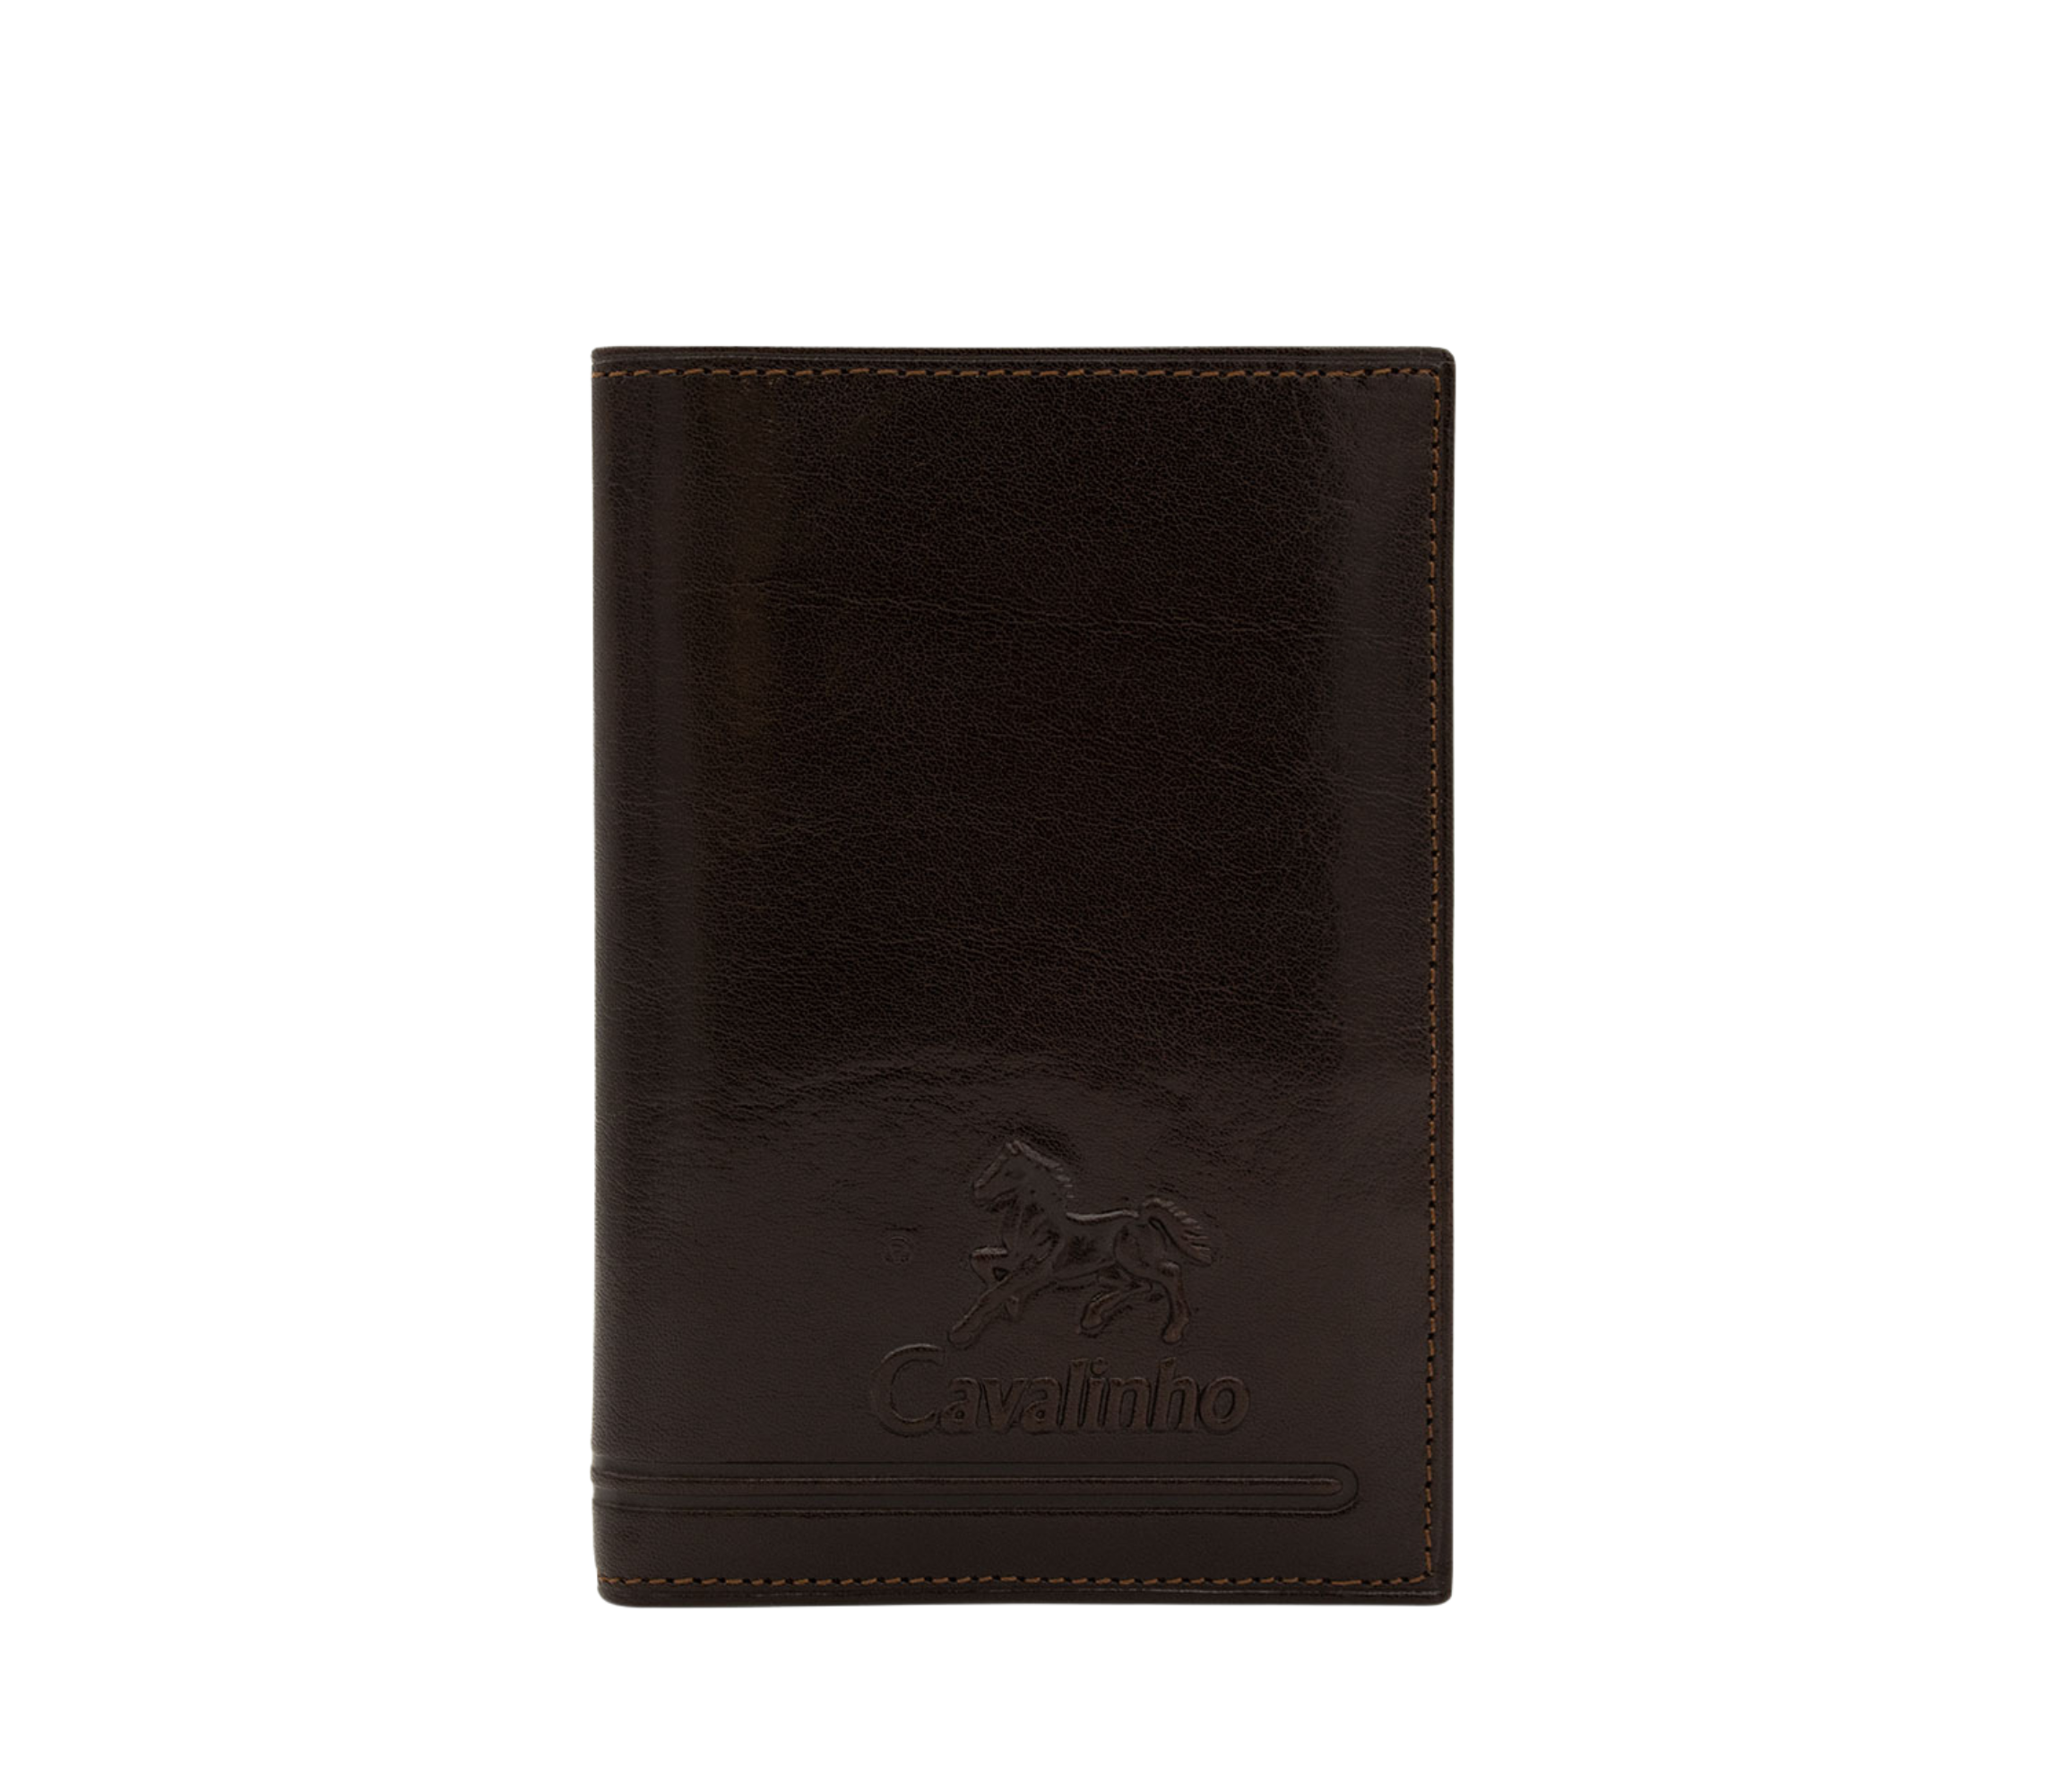 #color_ Brown | Cavalinho Men's 2 in 1 Bifold Leather Wallet - Brown - 28610556.02_P01